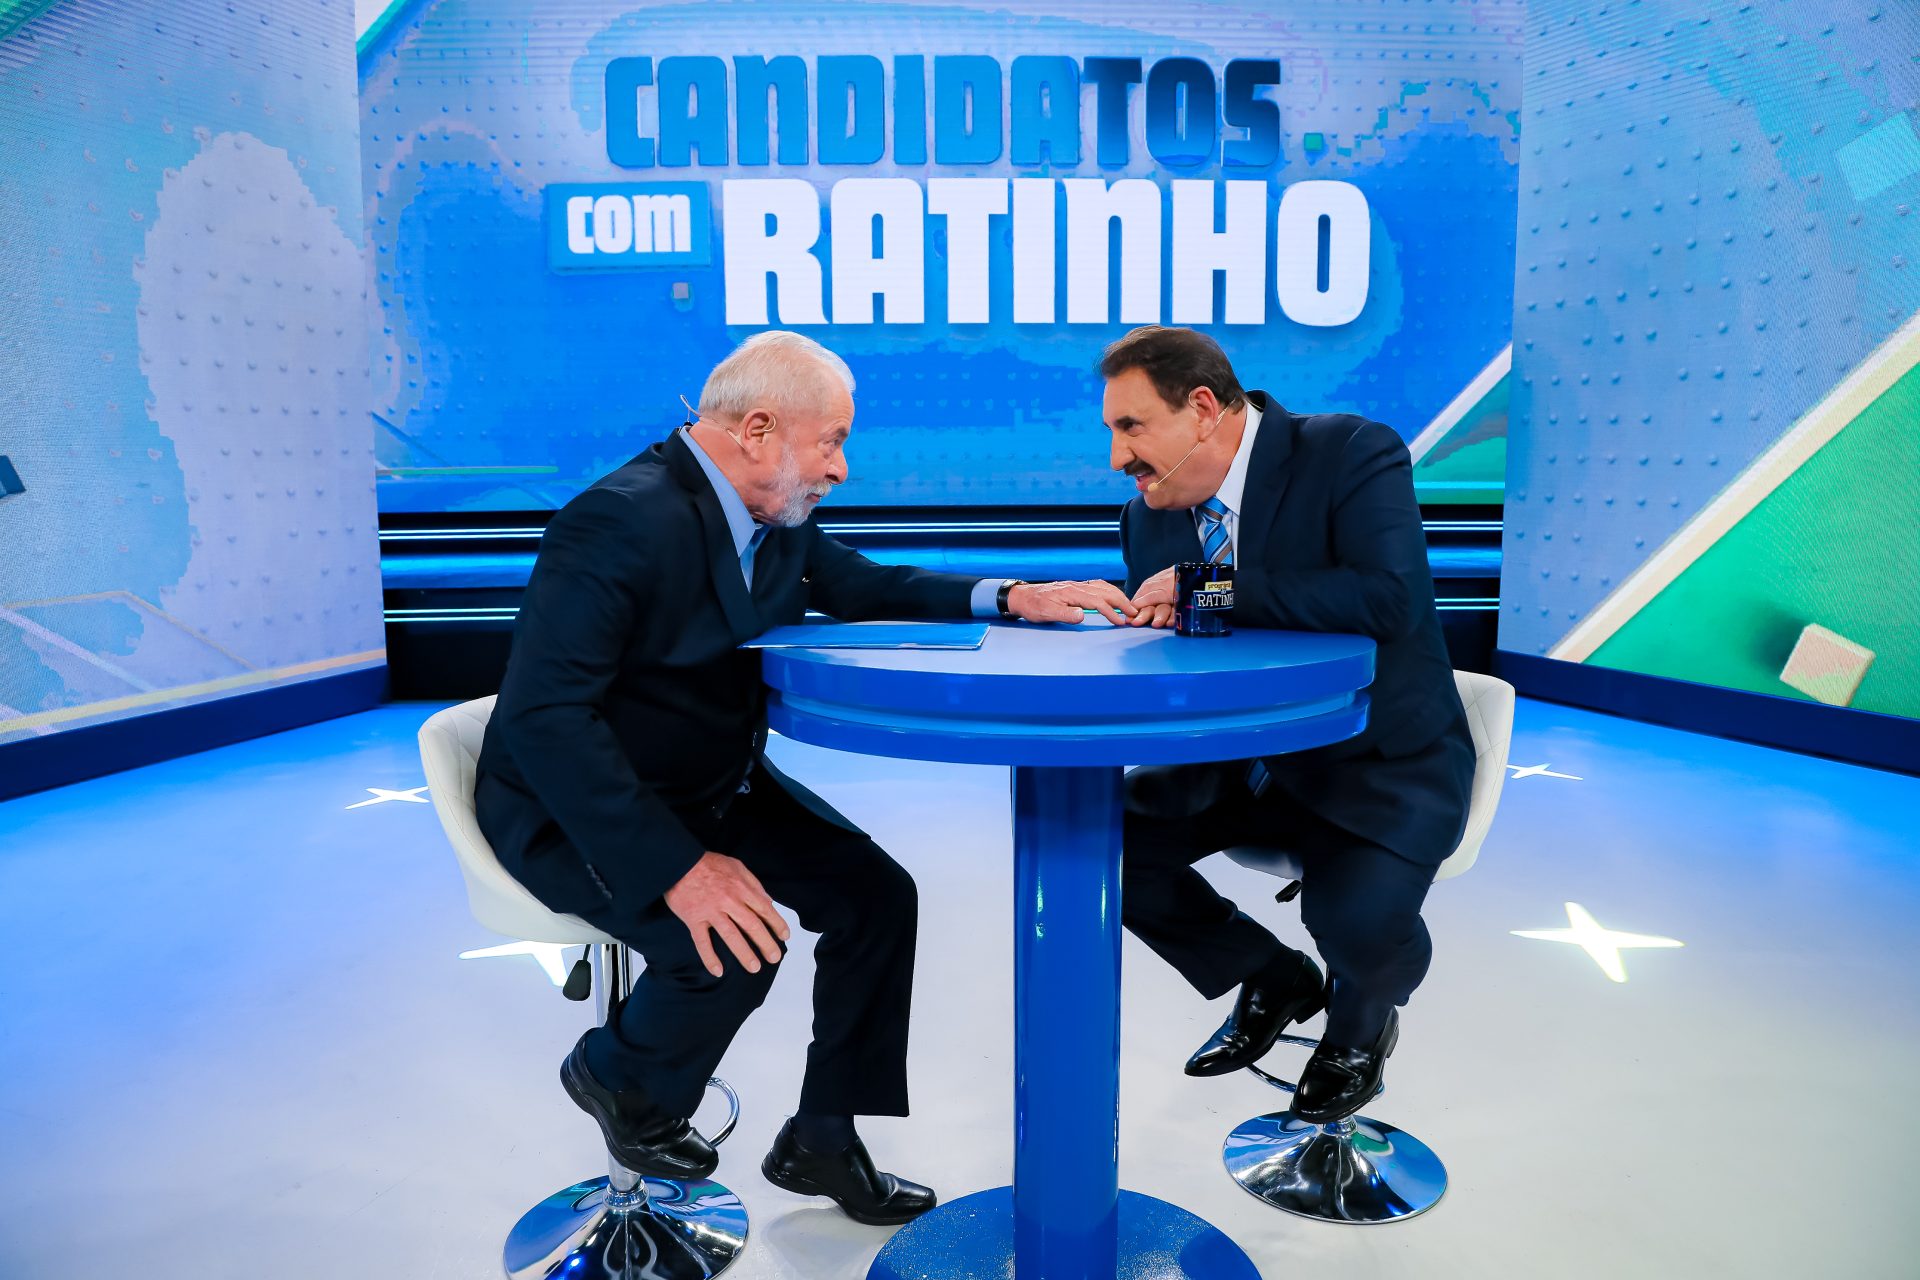 Ratinho comete “ato falho” surpreendente em entrevista com Lula e web reage: “Convertido”